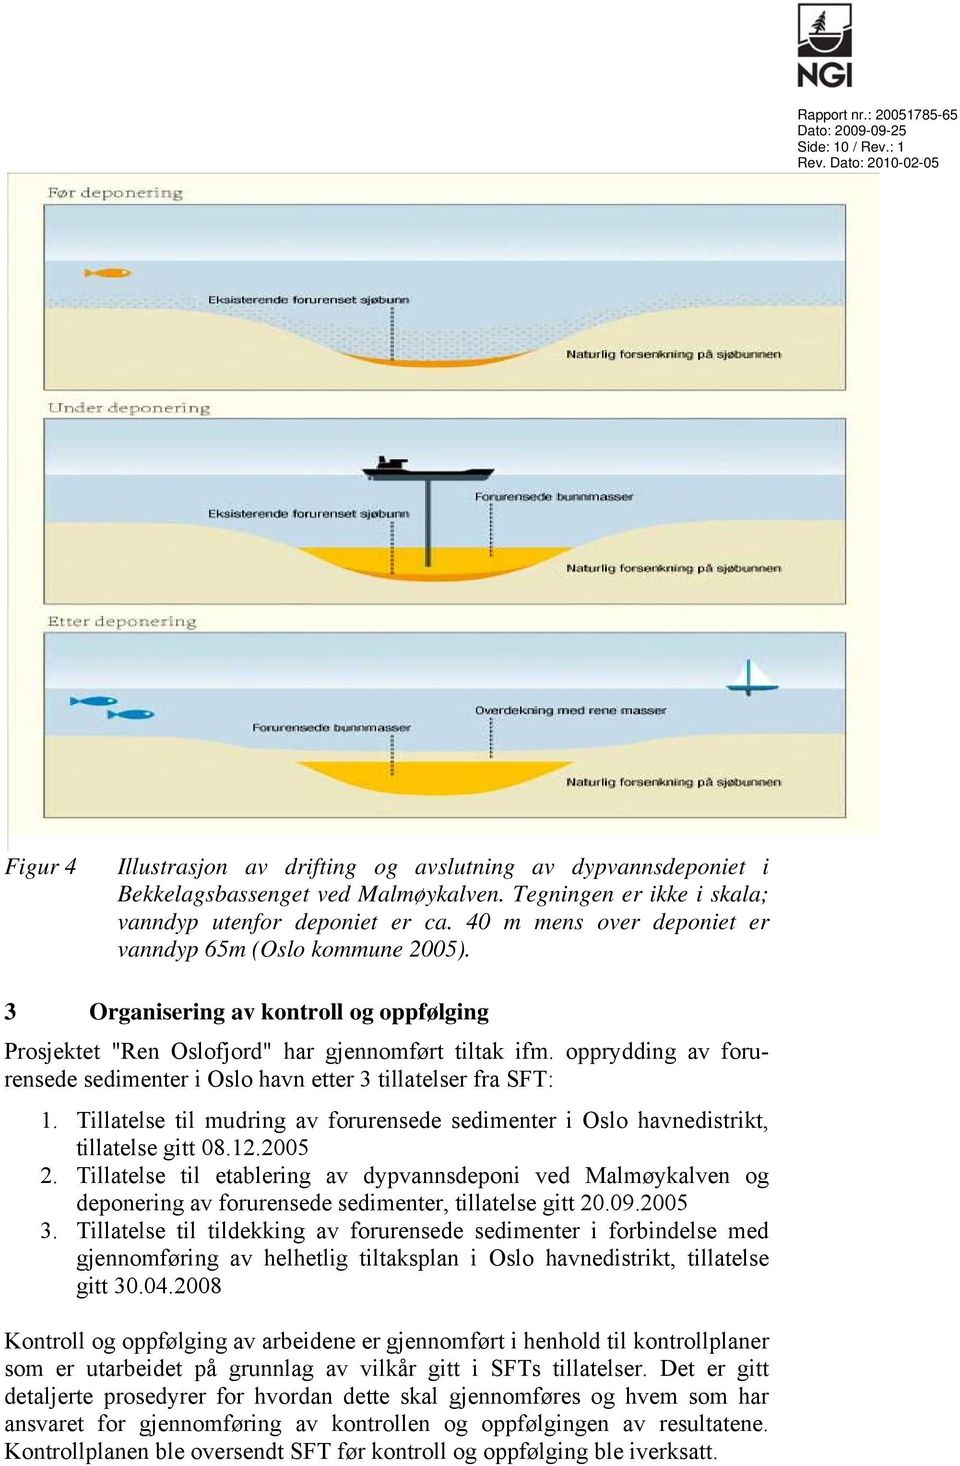 3 Organisering av kontroll og oppfølging Prosjektet "Ren Oslofjord" har gjennomført tiltak ifm. opprydding av forurensede sedimenter i Oslo havn etter 3 tillatelser fra SFT: 1.